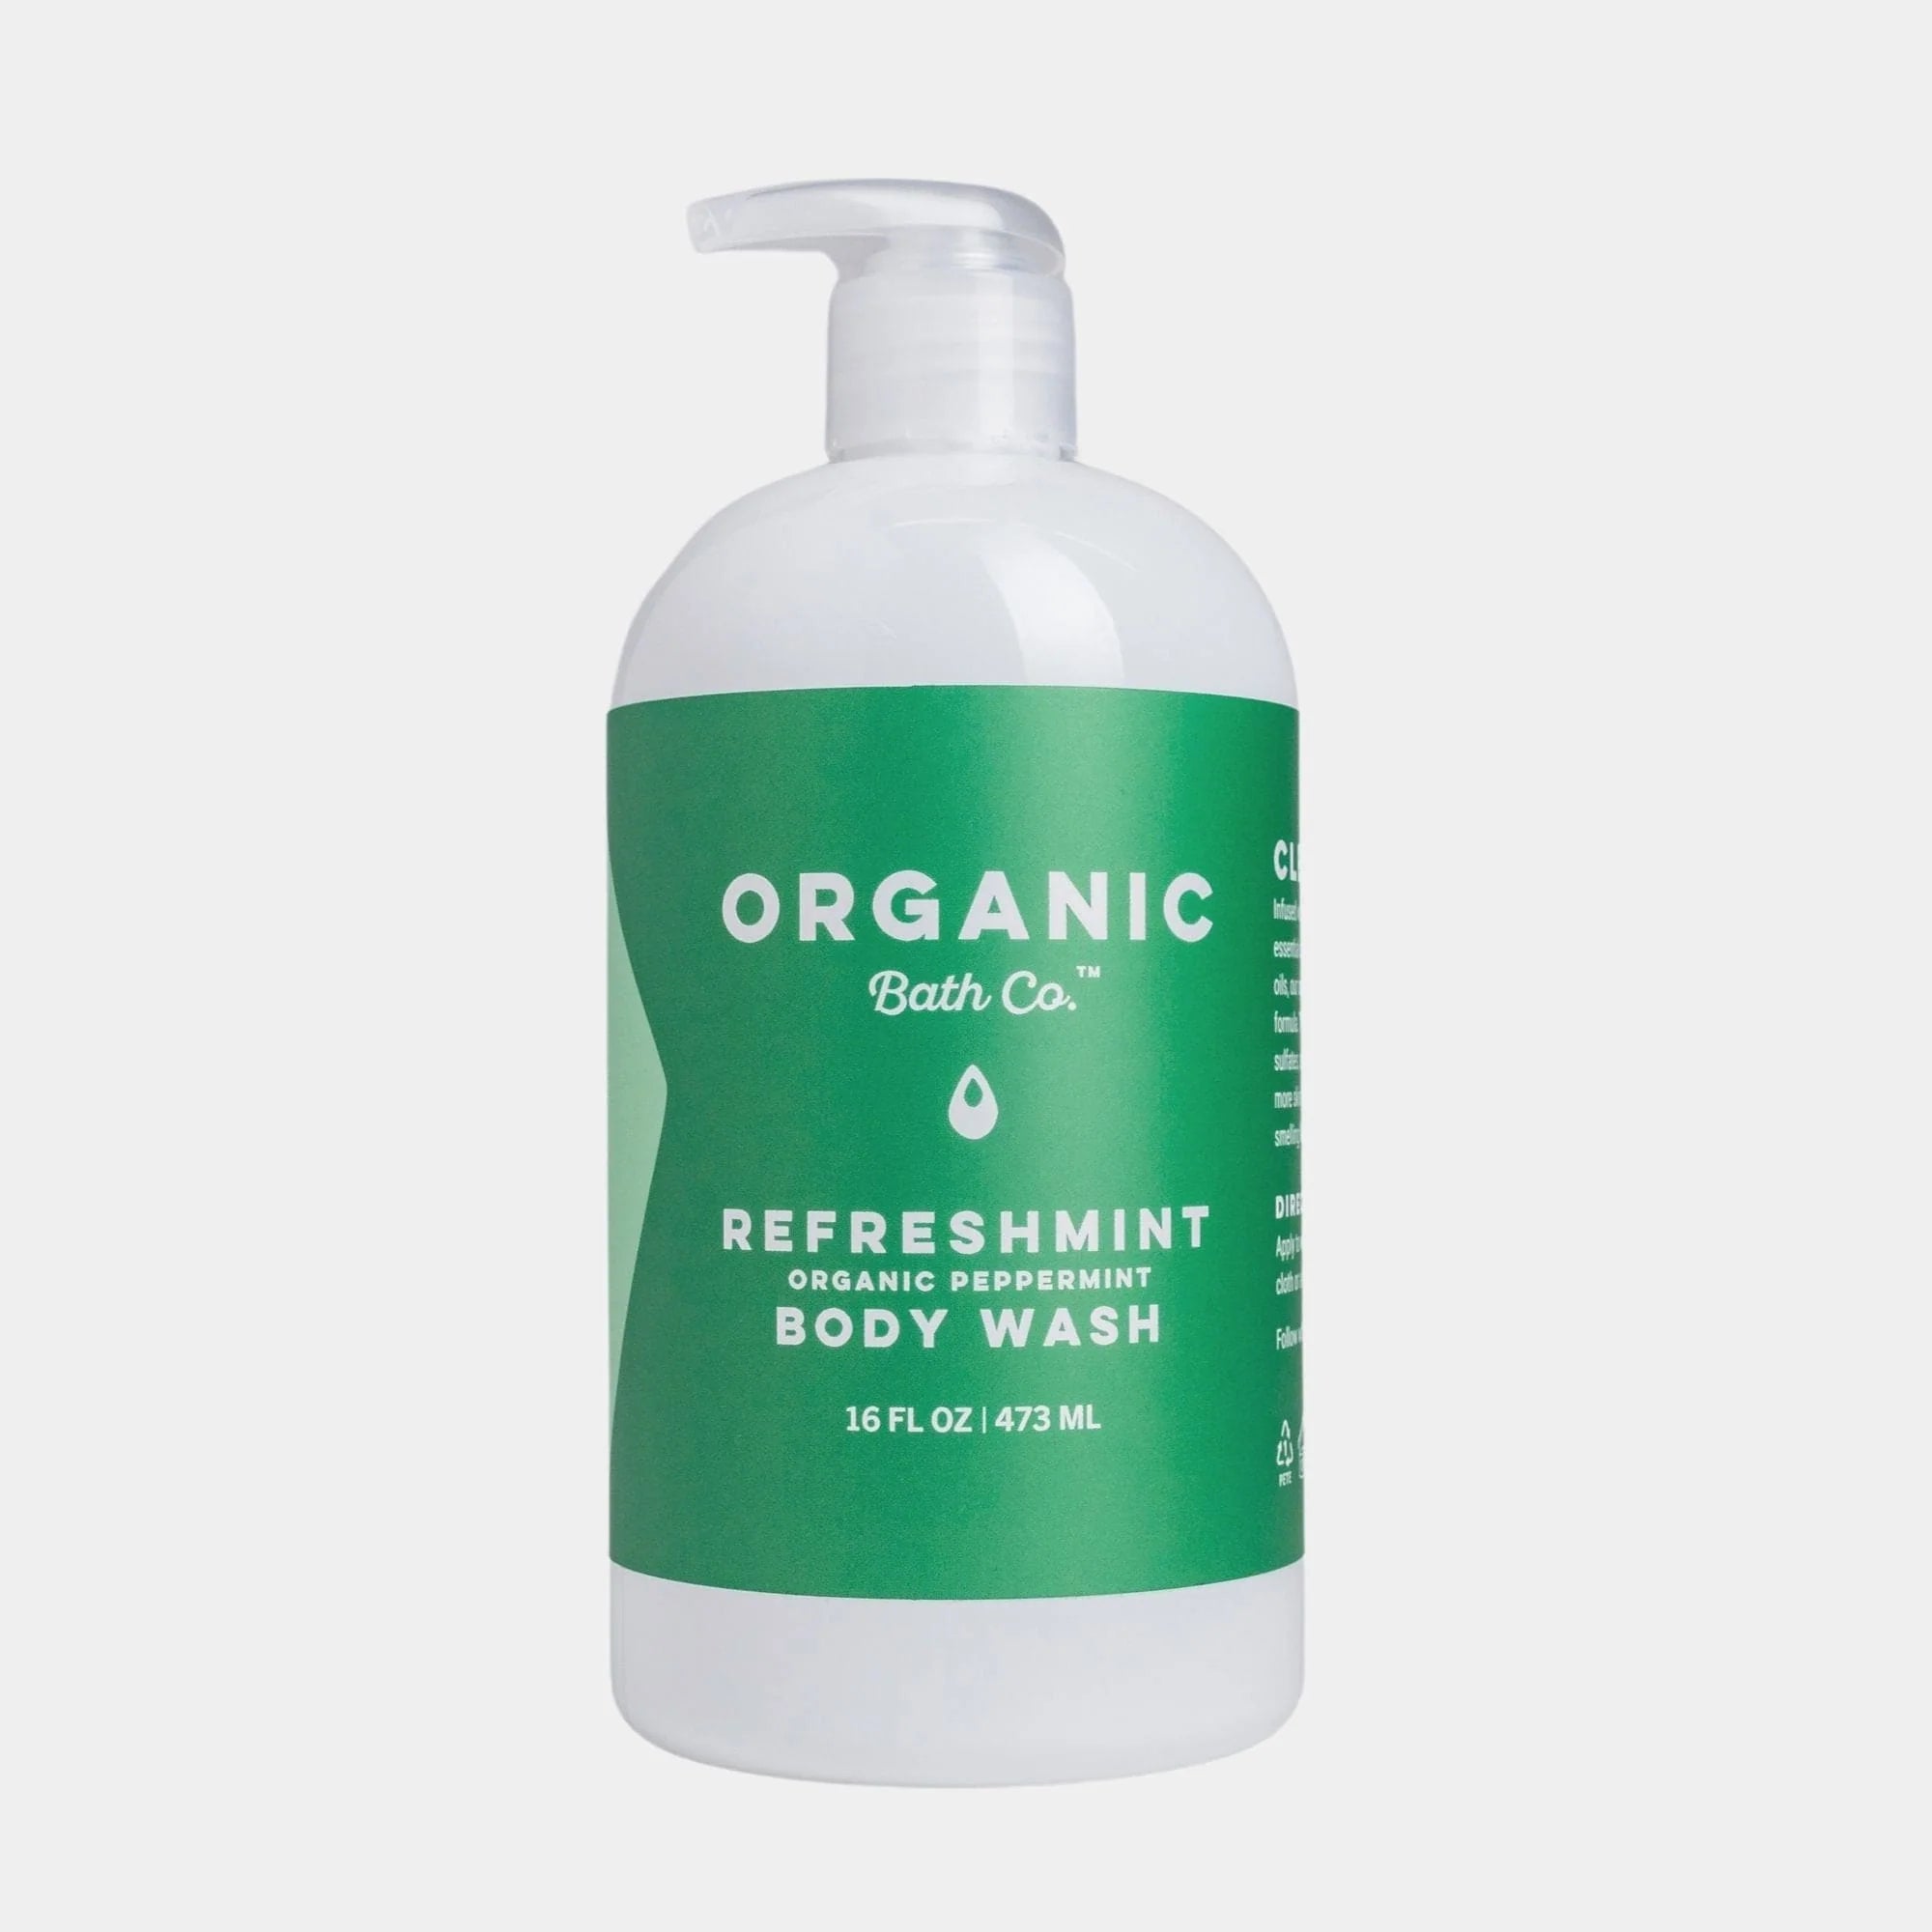 Organic Bath Co. RefreshMint Organic Body Wash